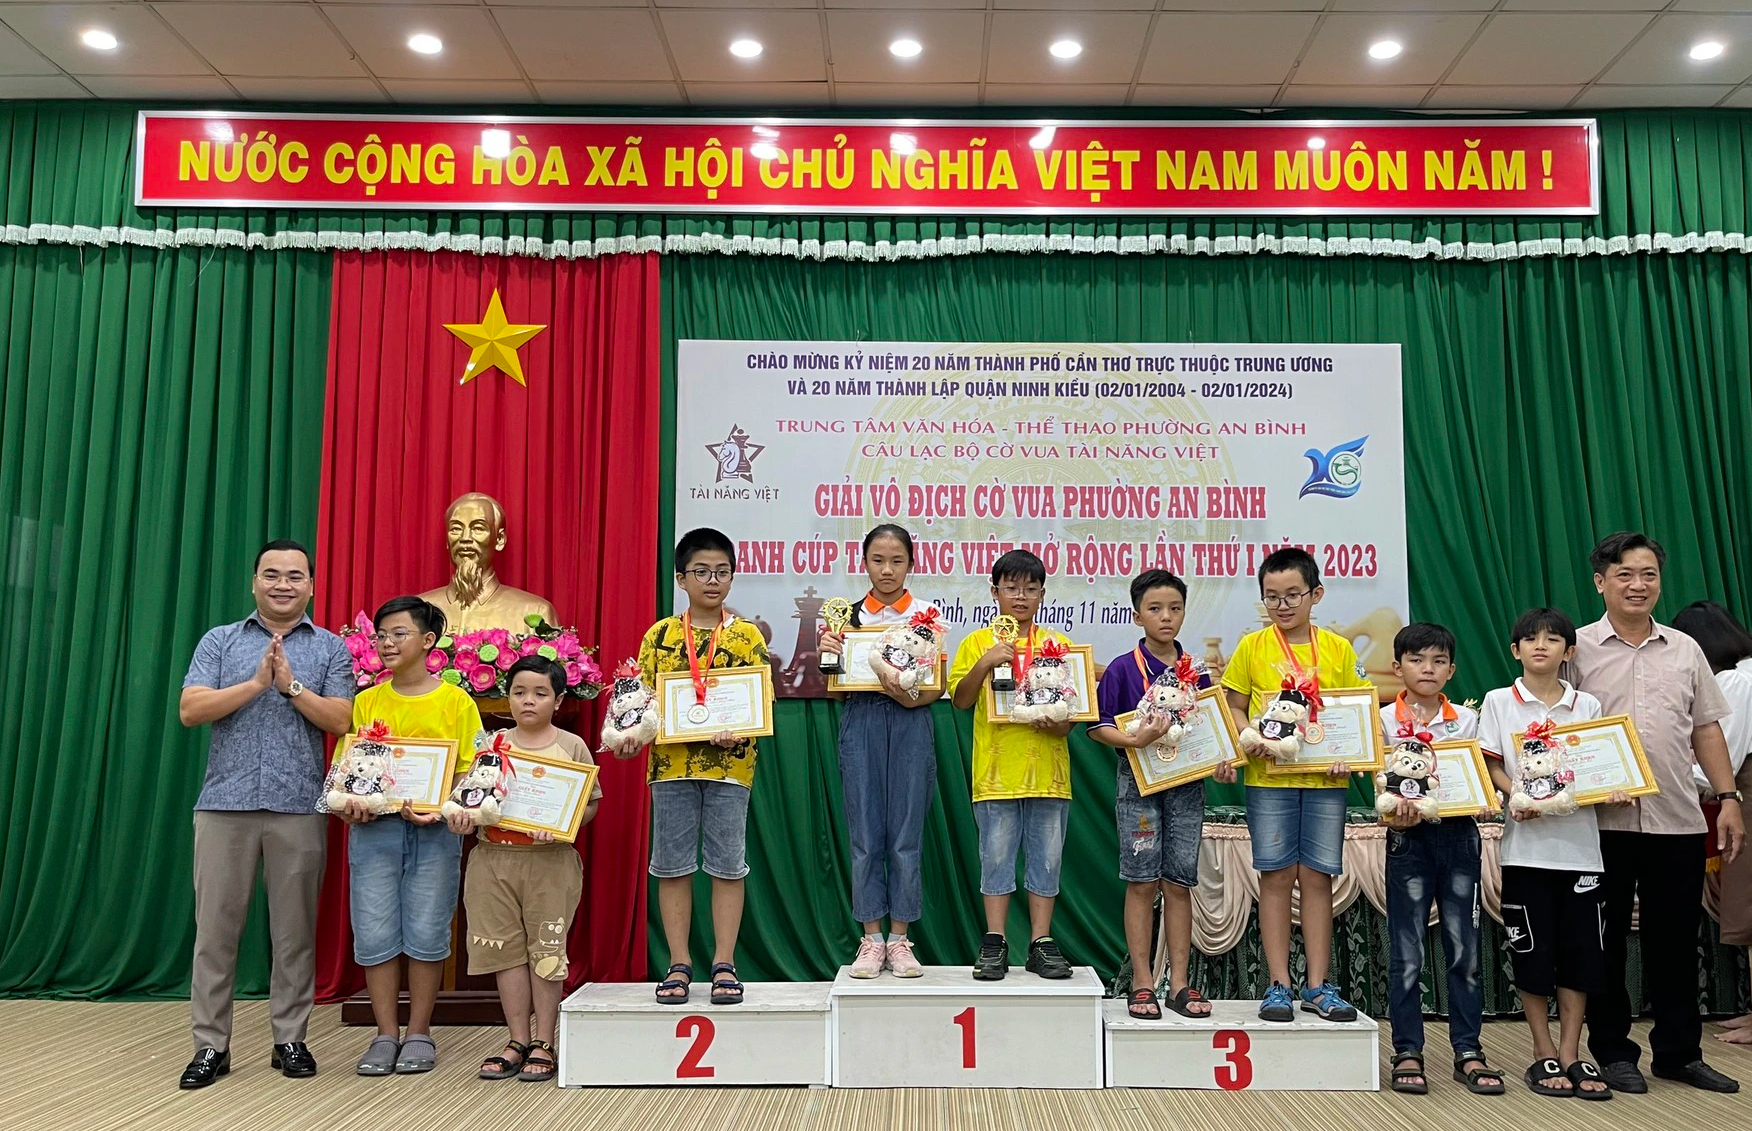 153 vận động viên tranh cúp cờ vua “Tài năng Việt” ở Cần Thơ